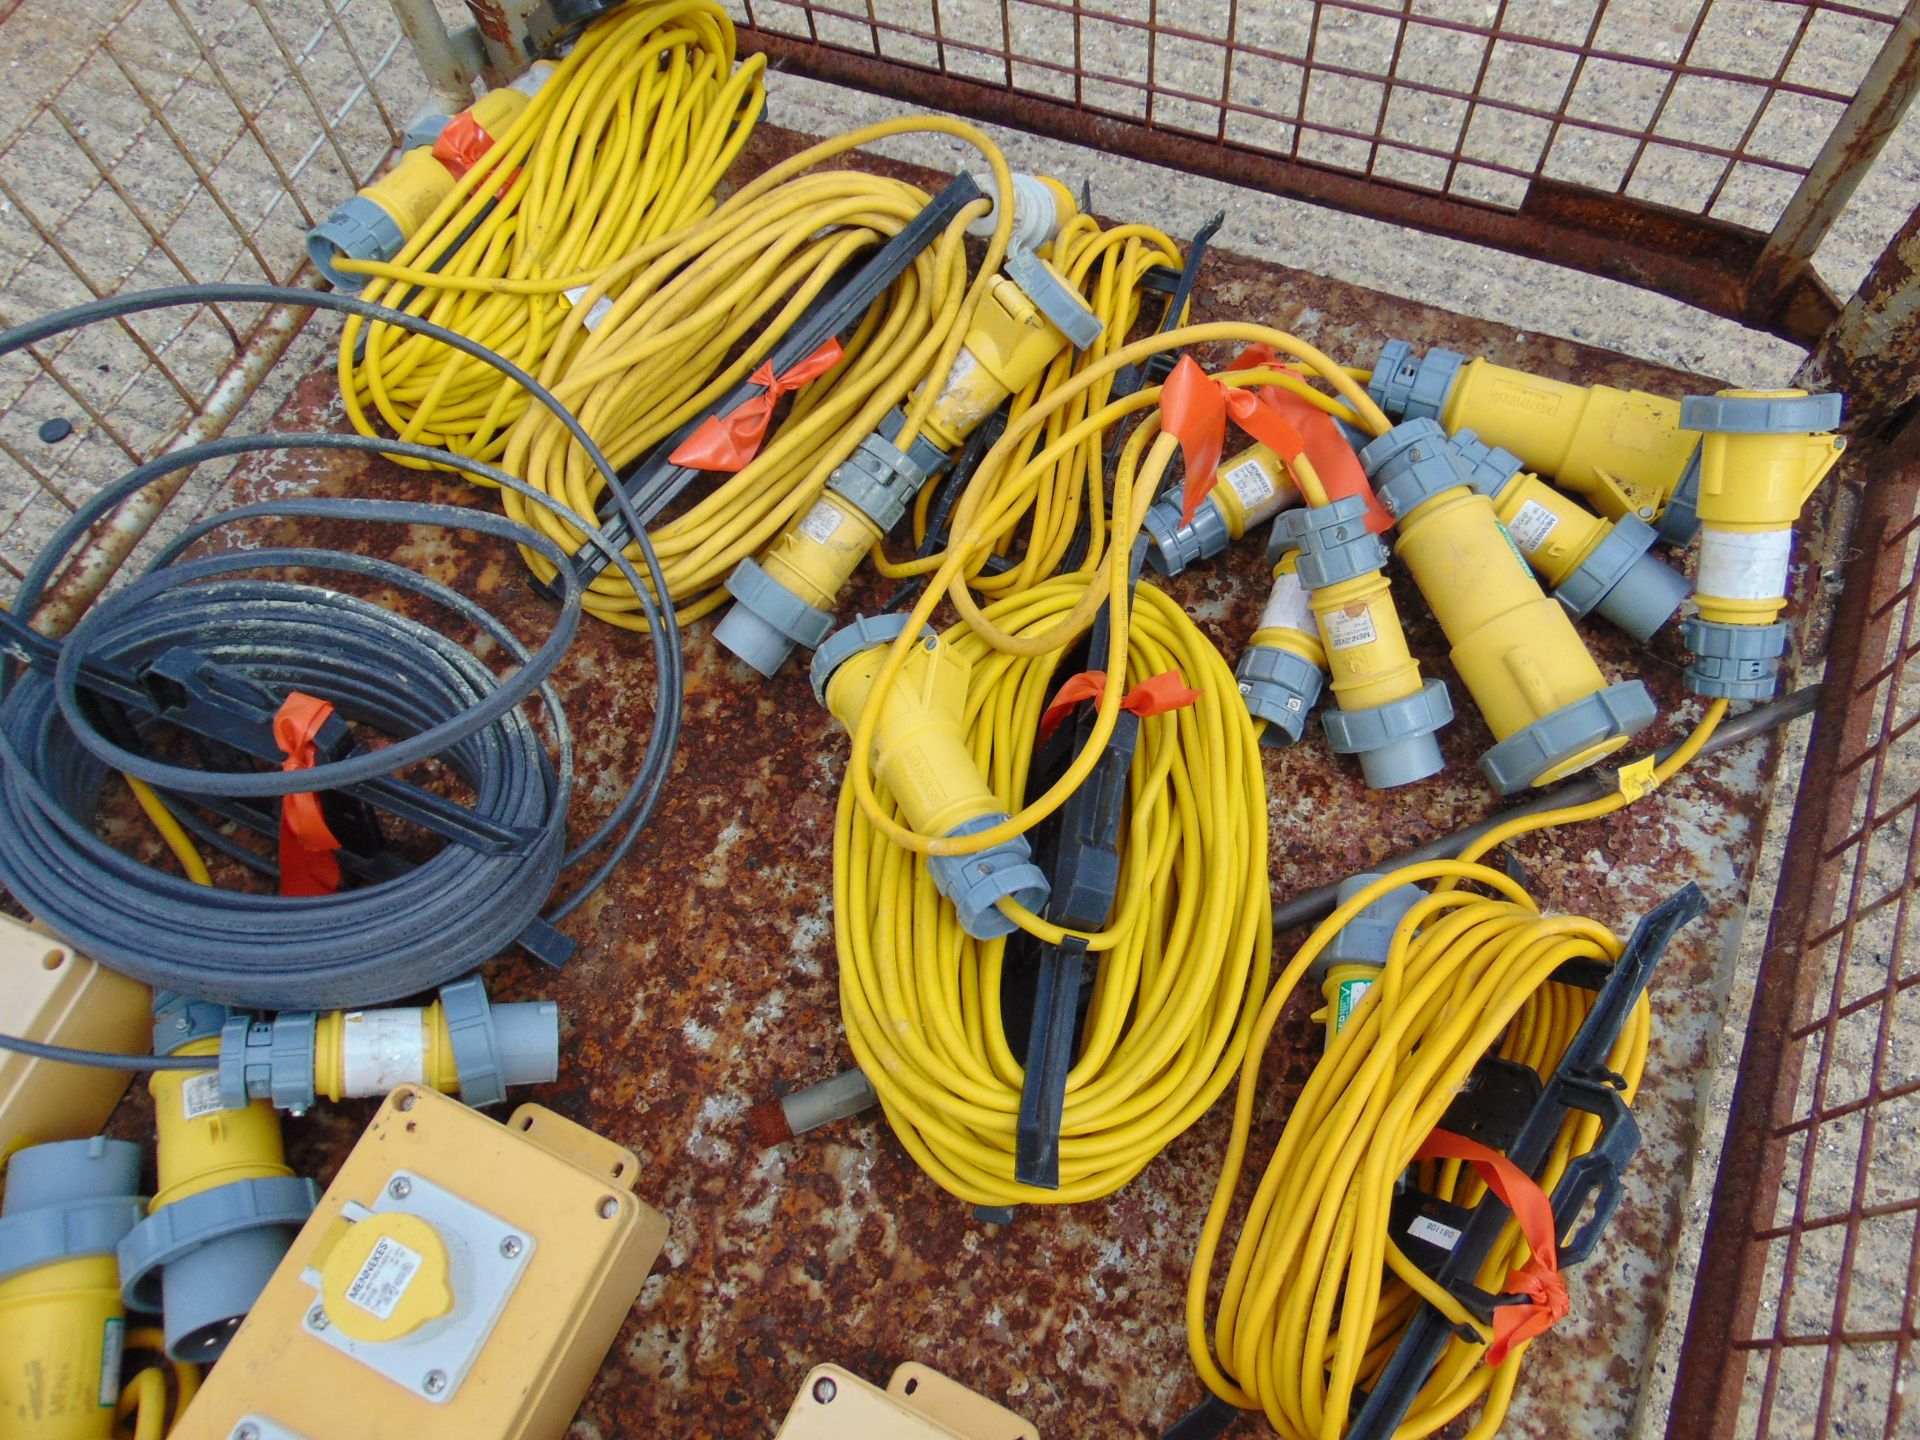 110V Cables & Mennekes 110V Distribution Units - Image 4 of 6